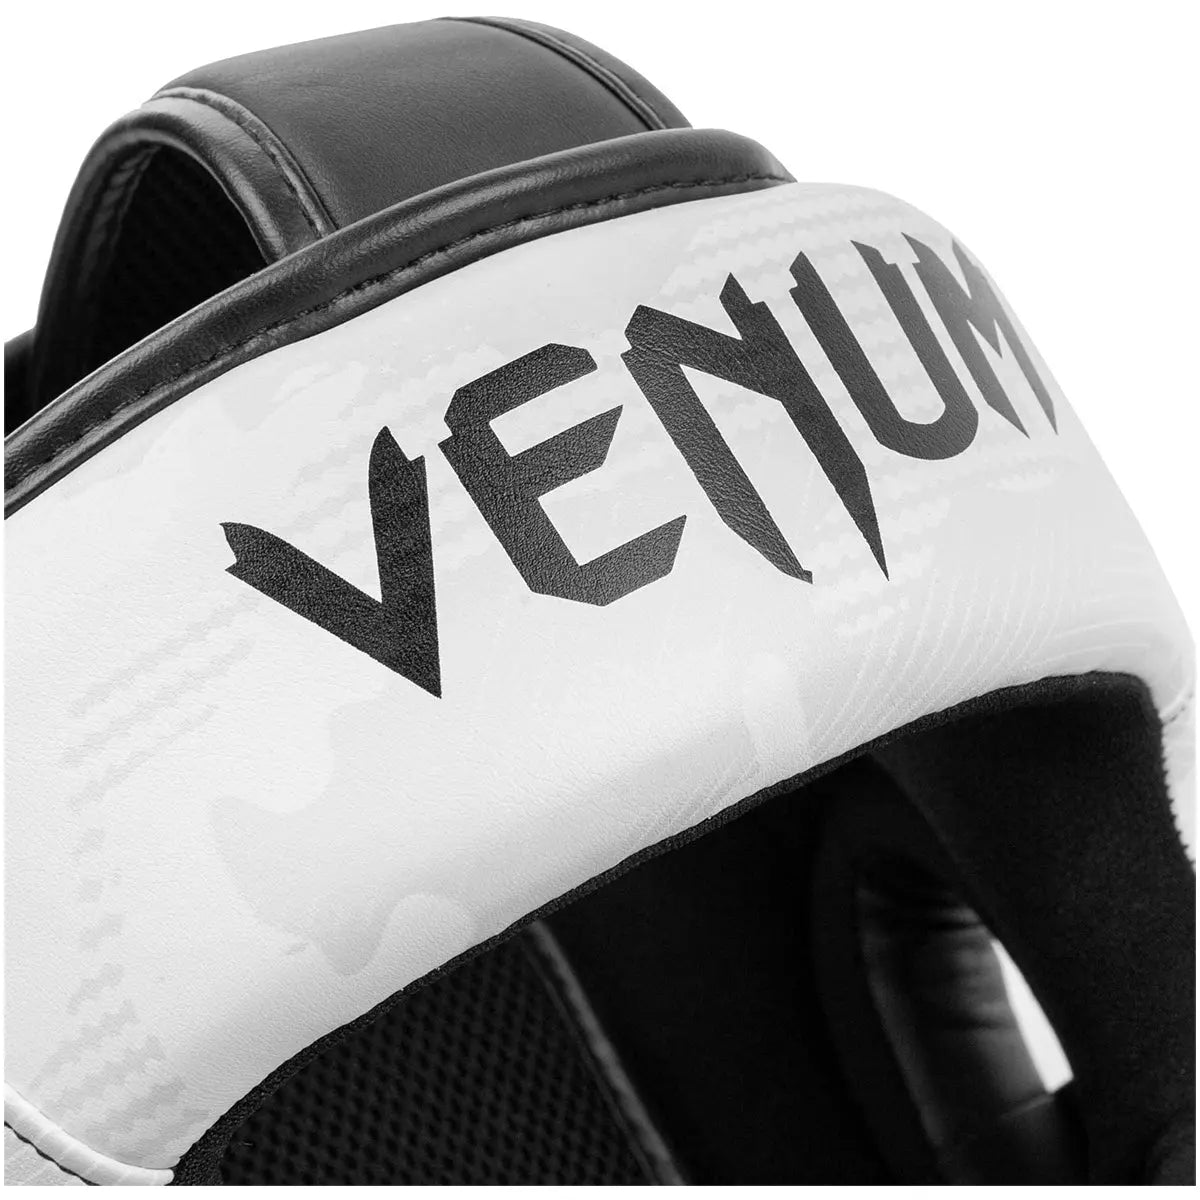 Venum Elite Boxing and MMA Protective Headgear Venum